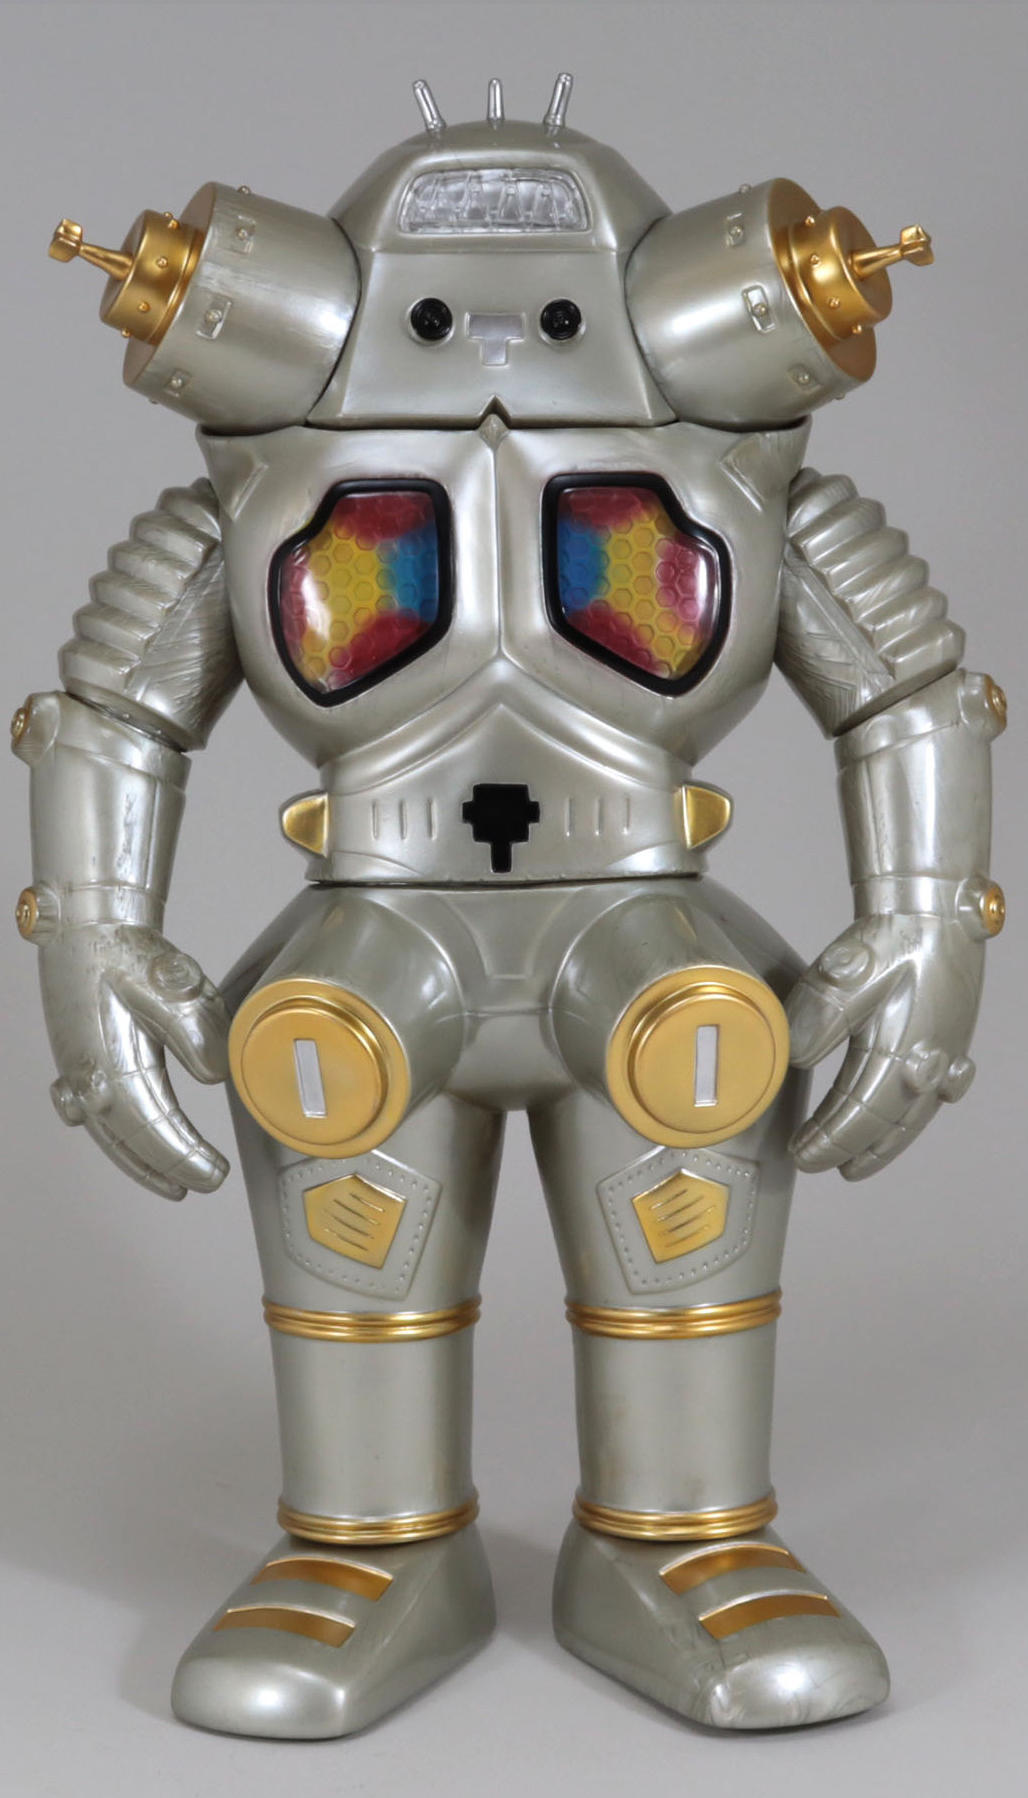 ノンスタンダードコレクション 第3弾 宇宙ロボット キングジョー 